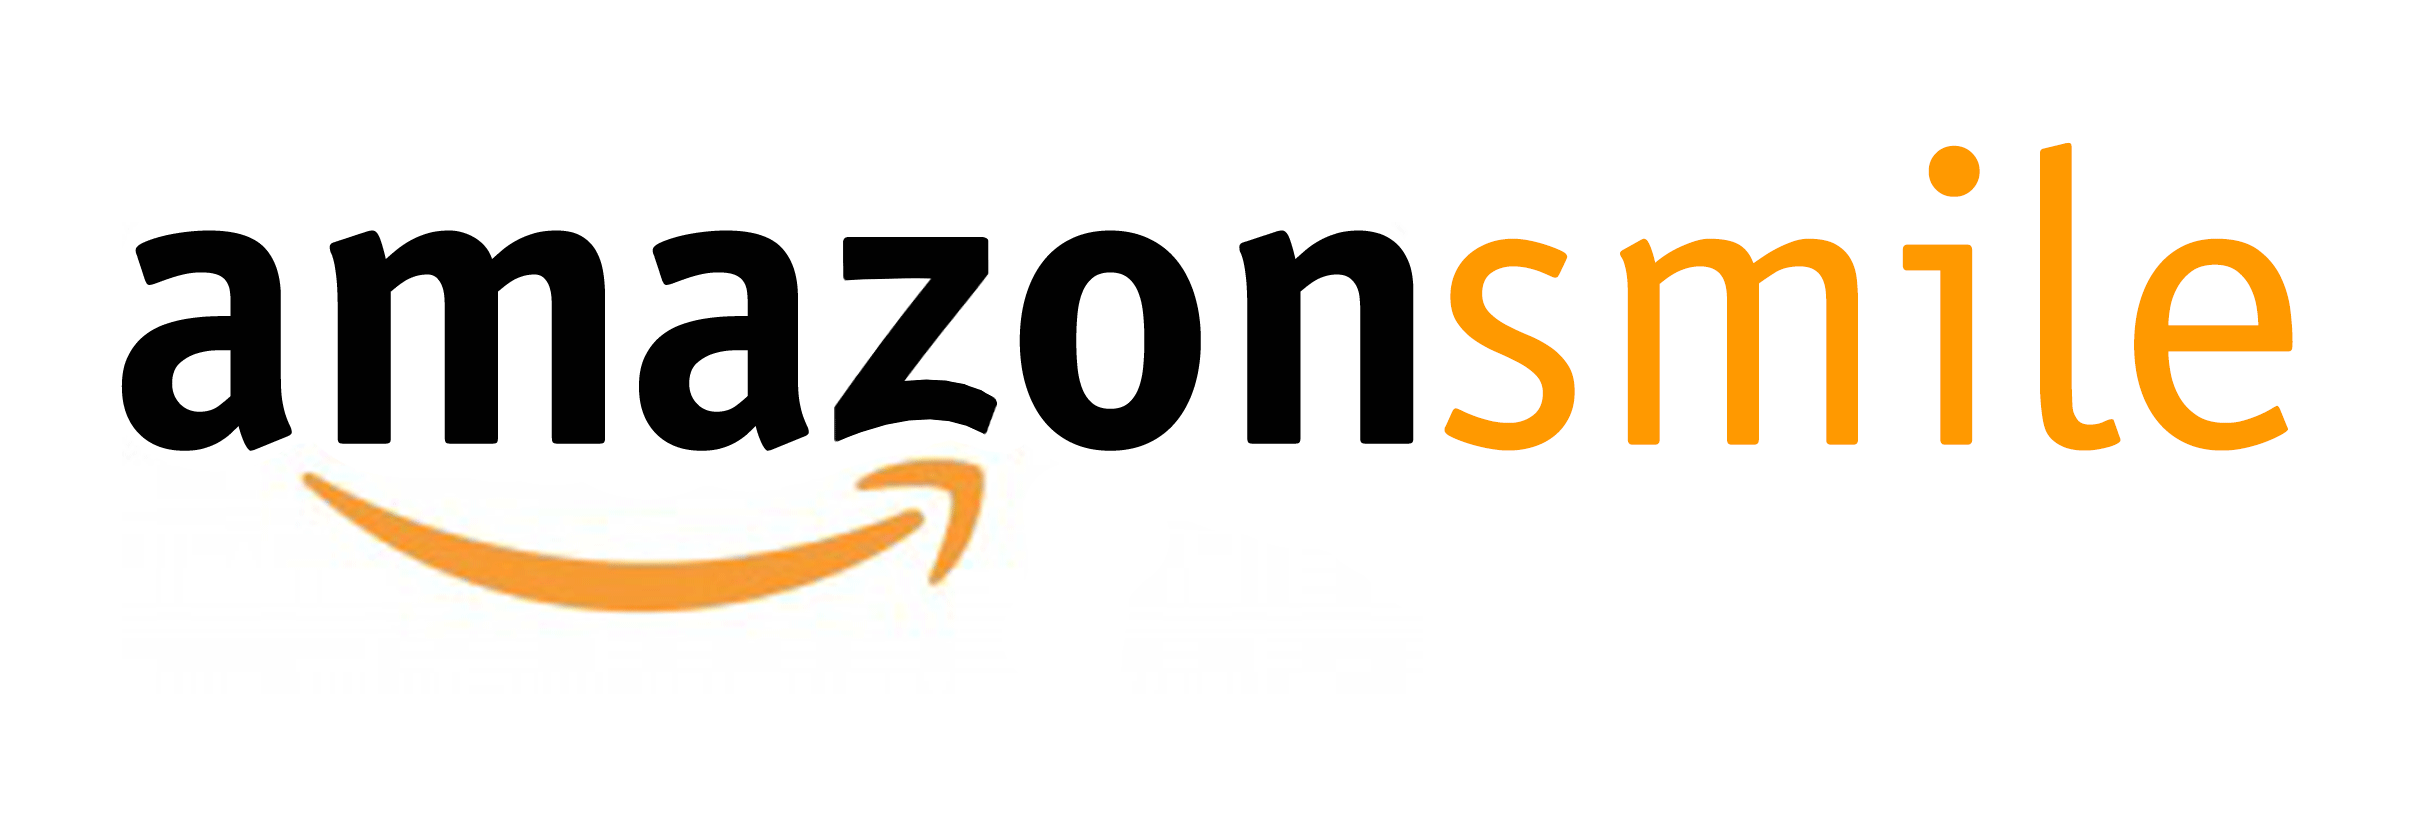 Amazon-Smile-Logo - Family Paths